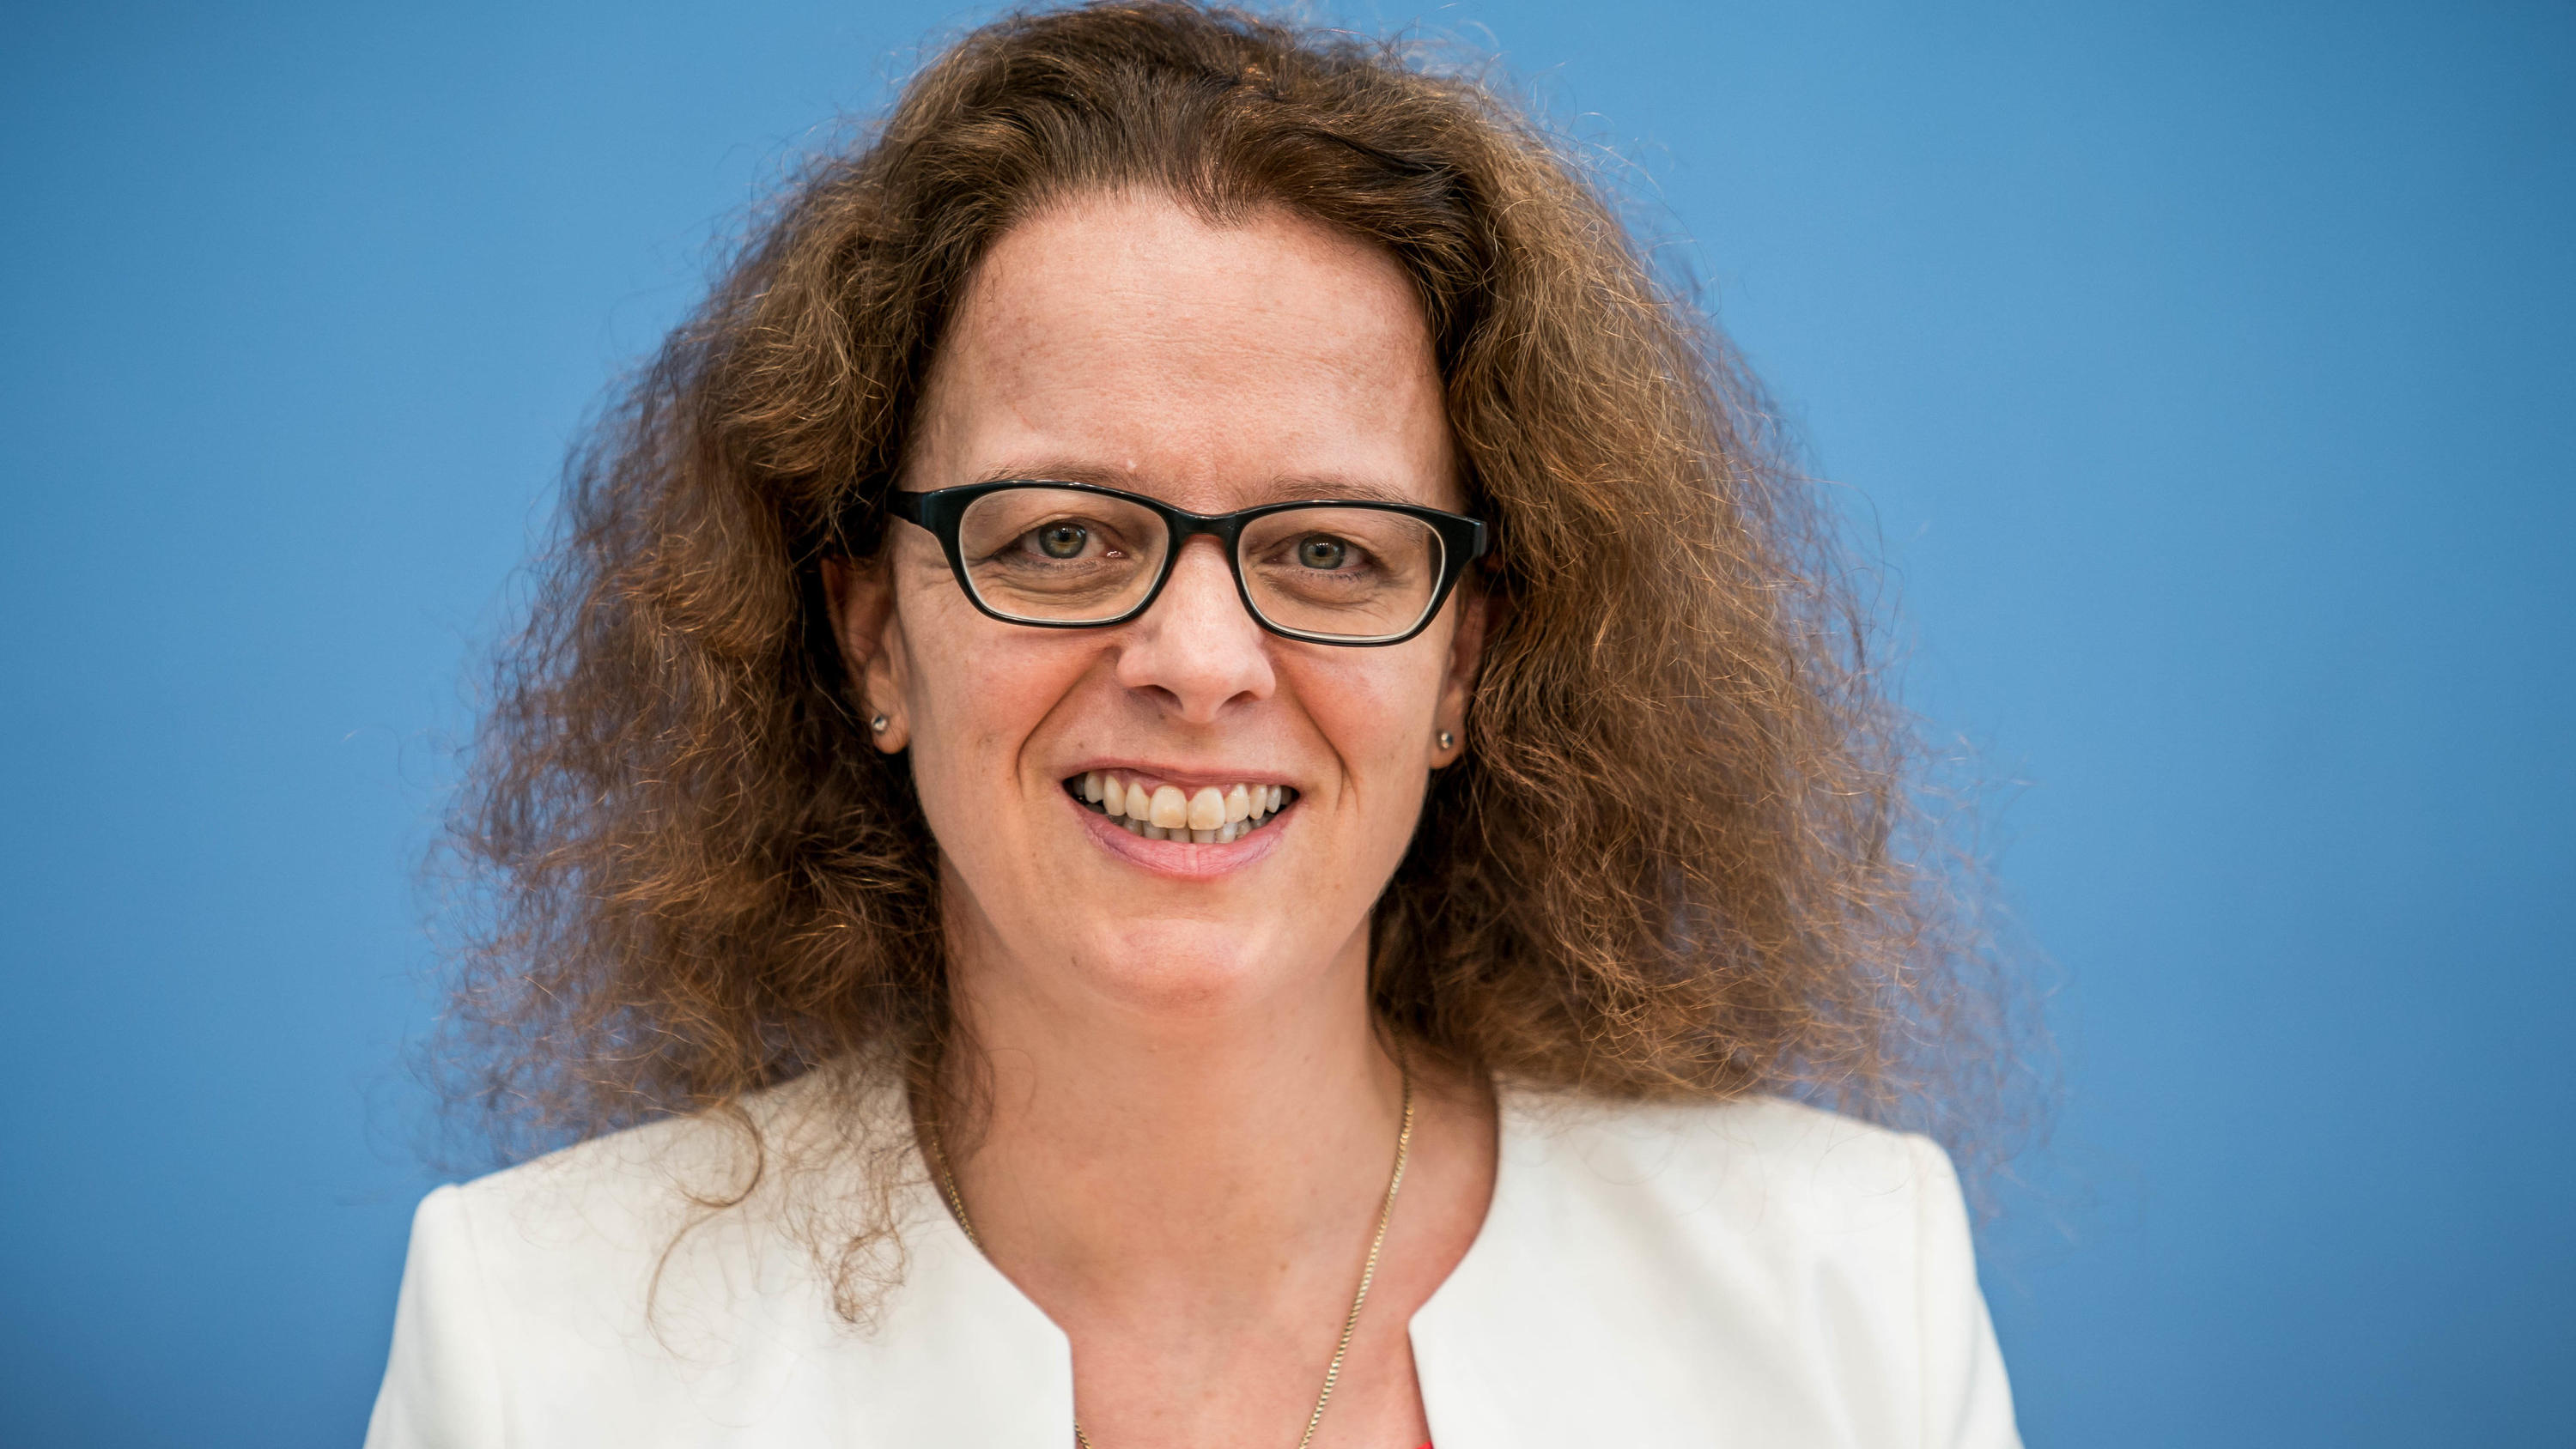 ARCHIV - 12.07.2019, Berlin: Isabel Schnabel, damals Professorin für Finanzmarktökonomie an der Rheinischen Friedrich-Wilhelms-Universität Bonn